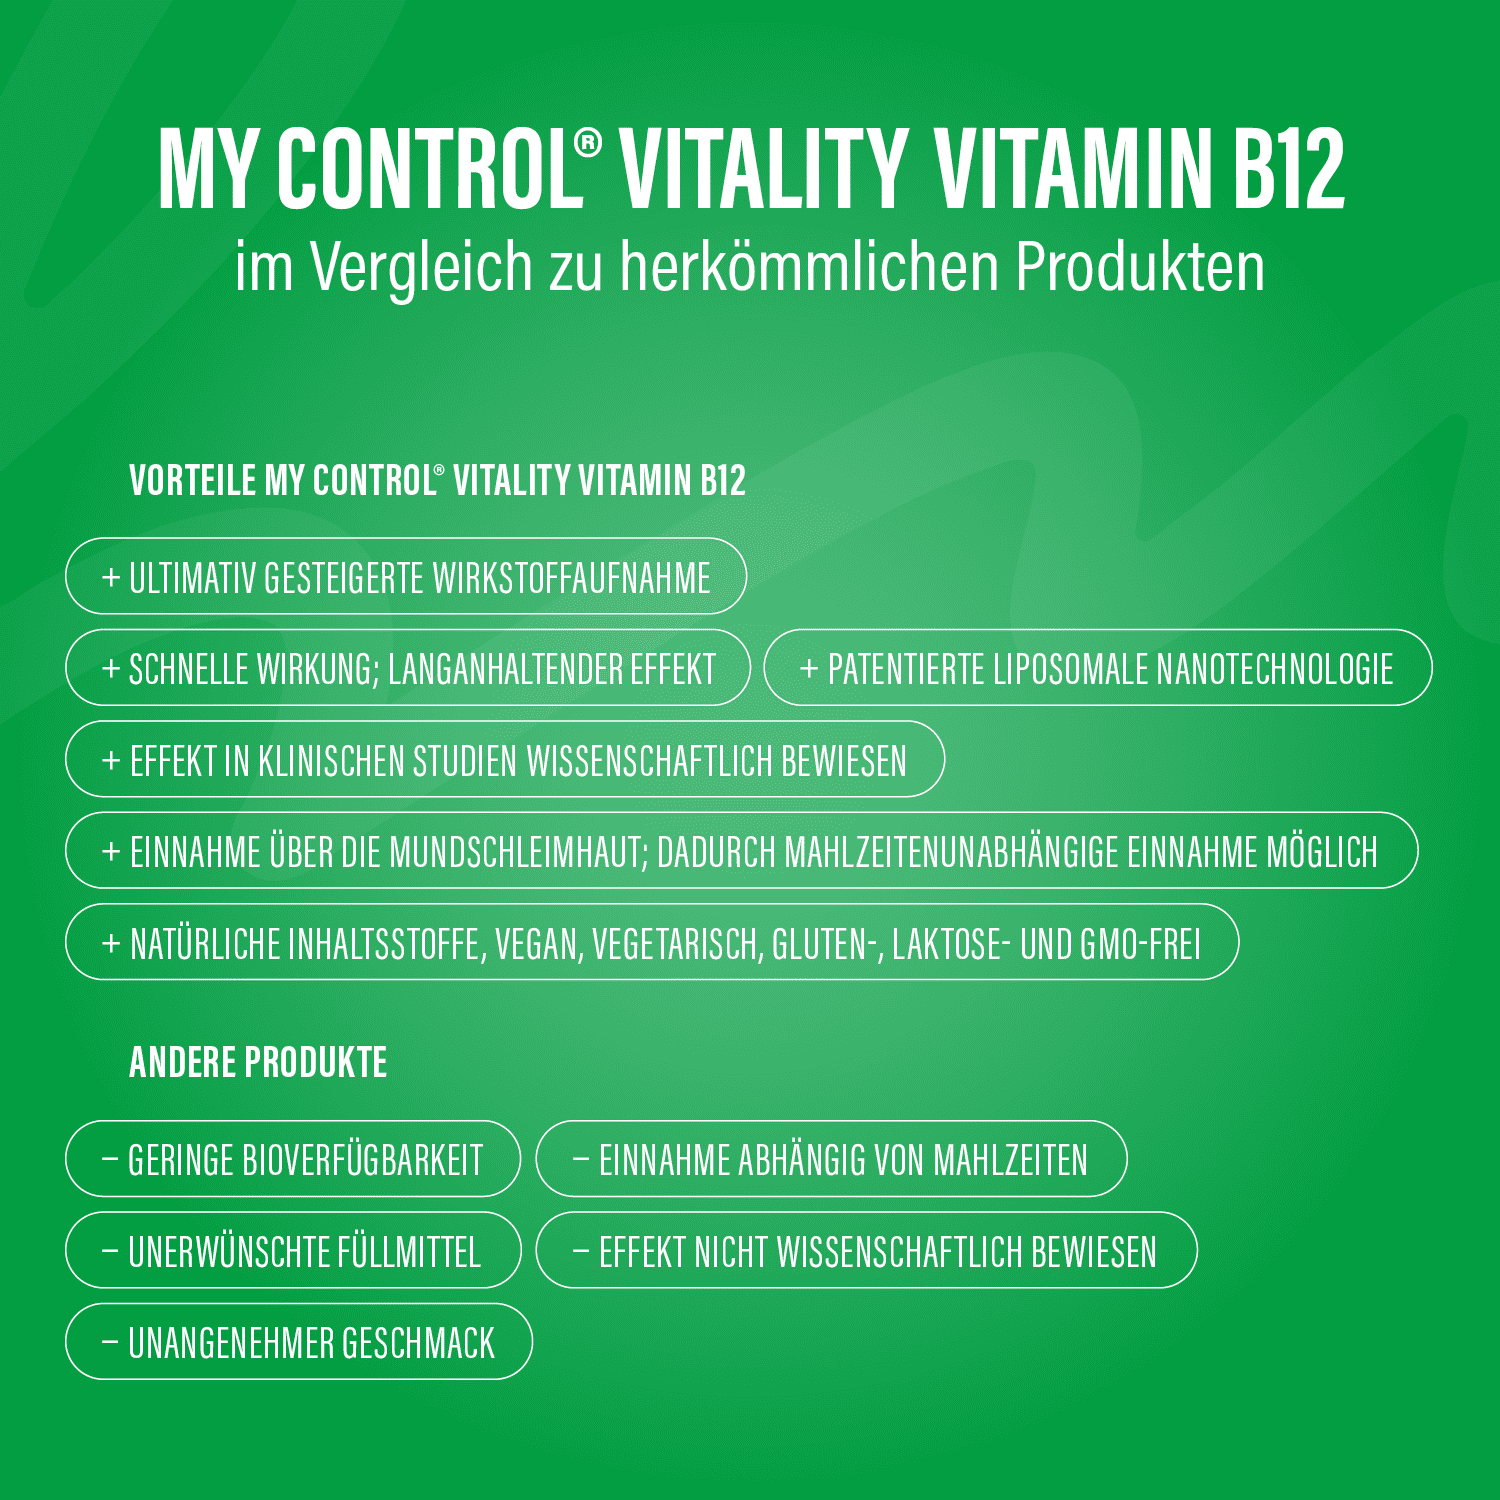 Refiller Vitamin B12 im Vergleich zu herkömmlichen Produkten